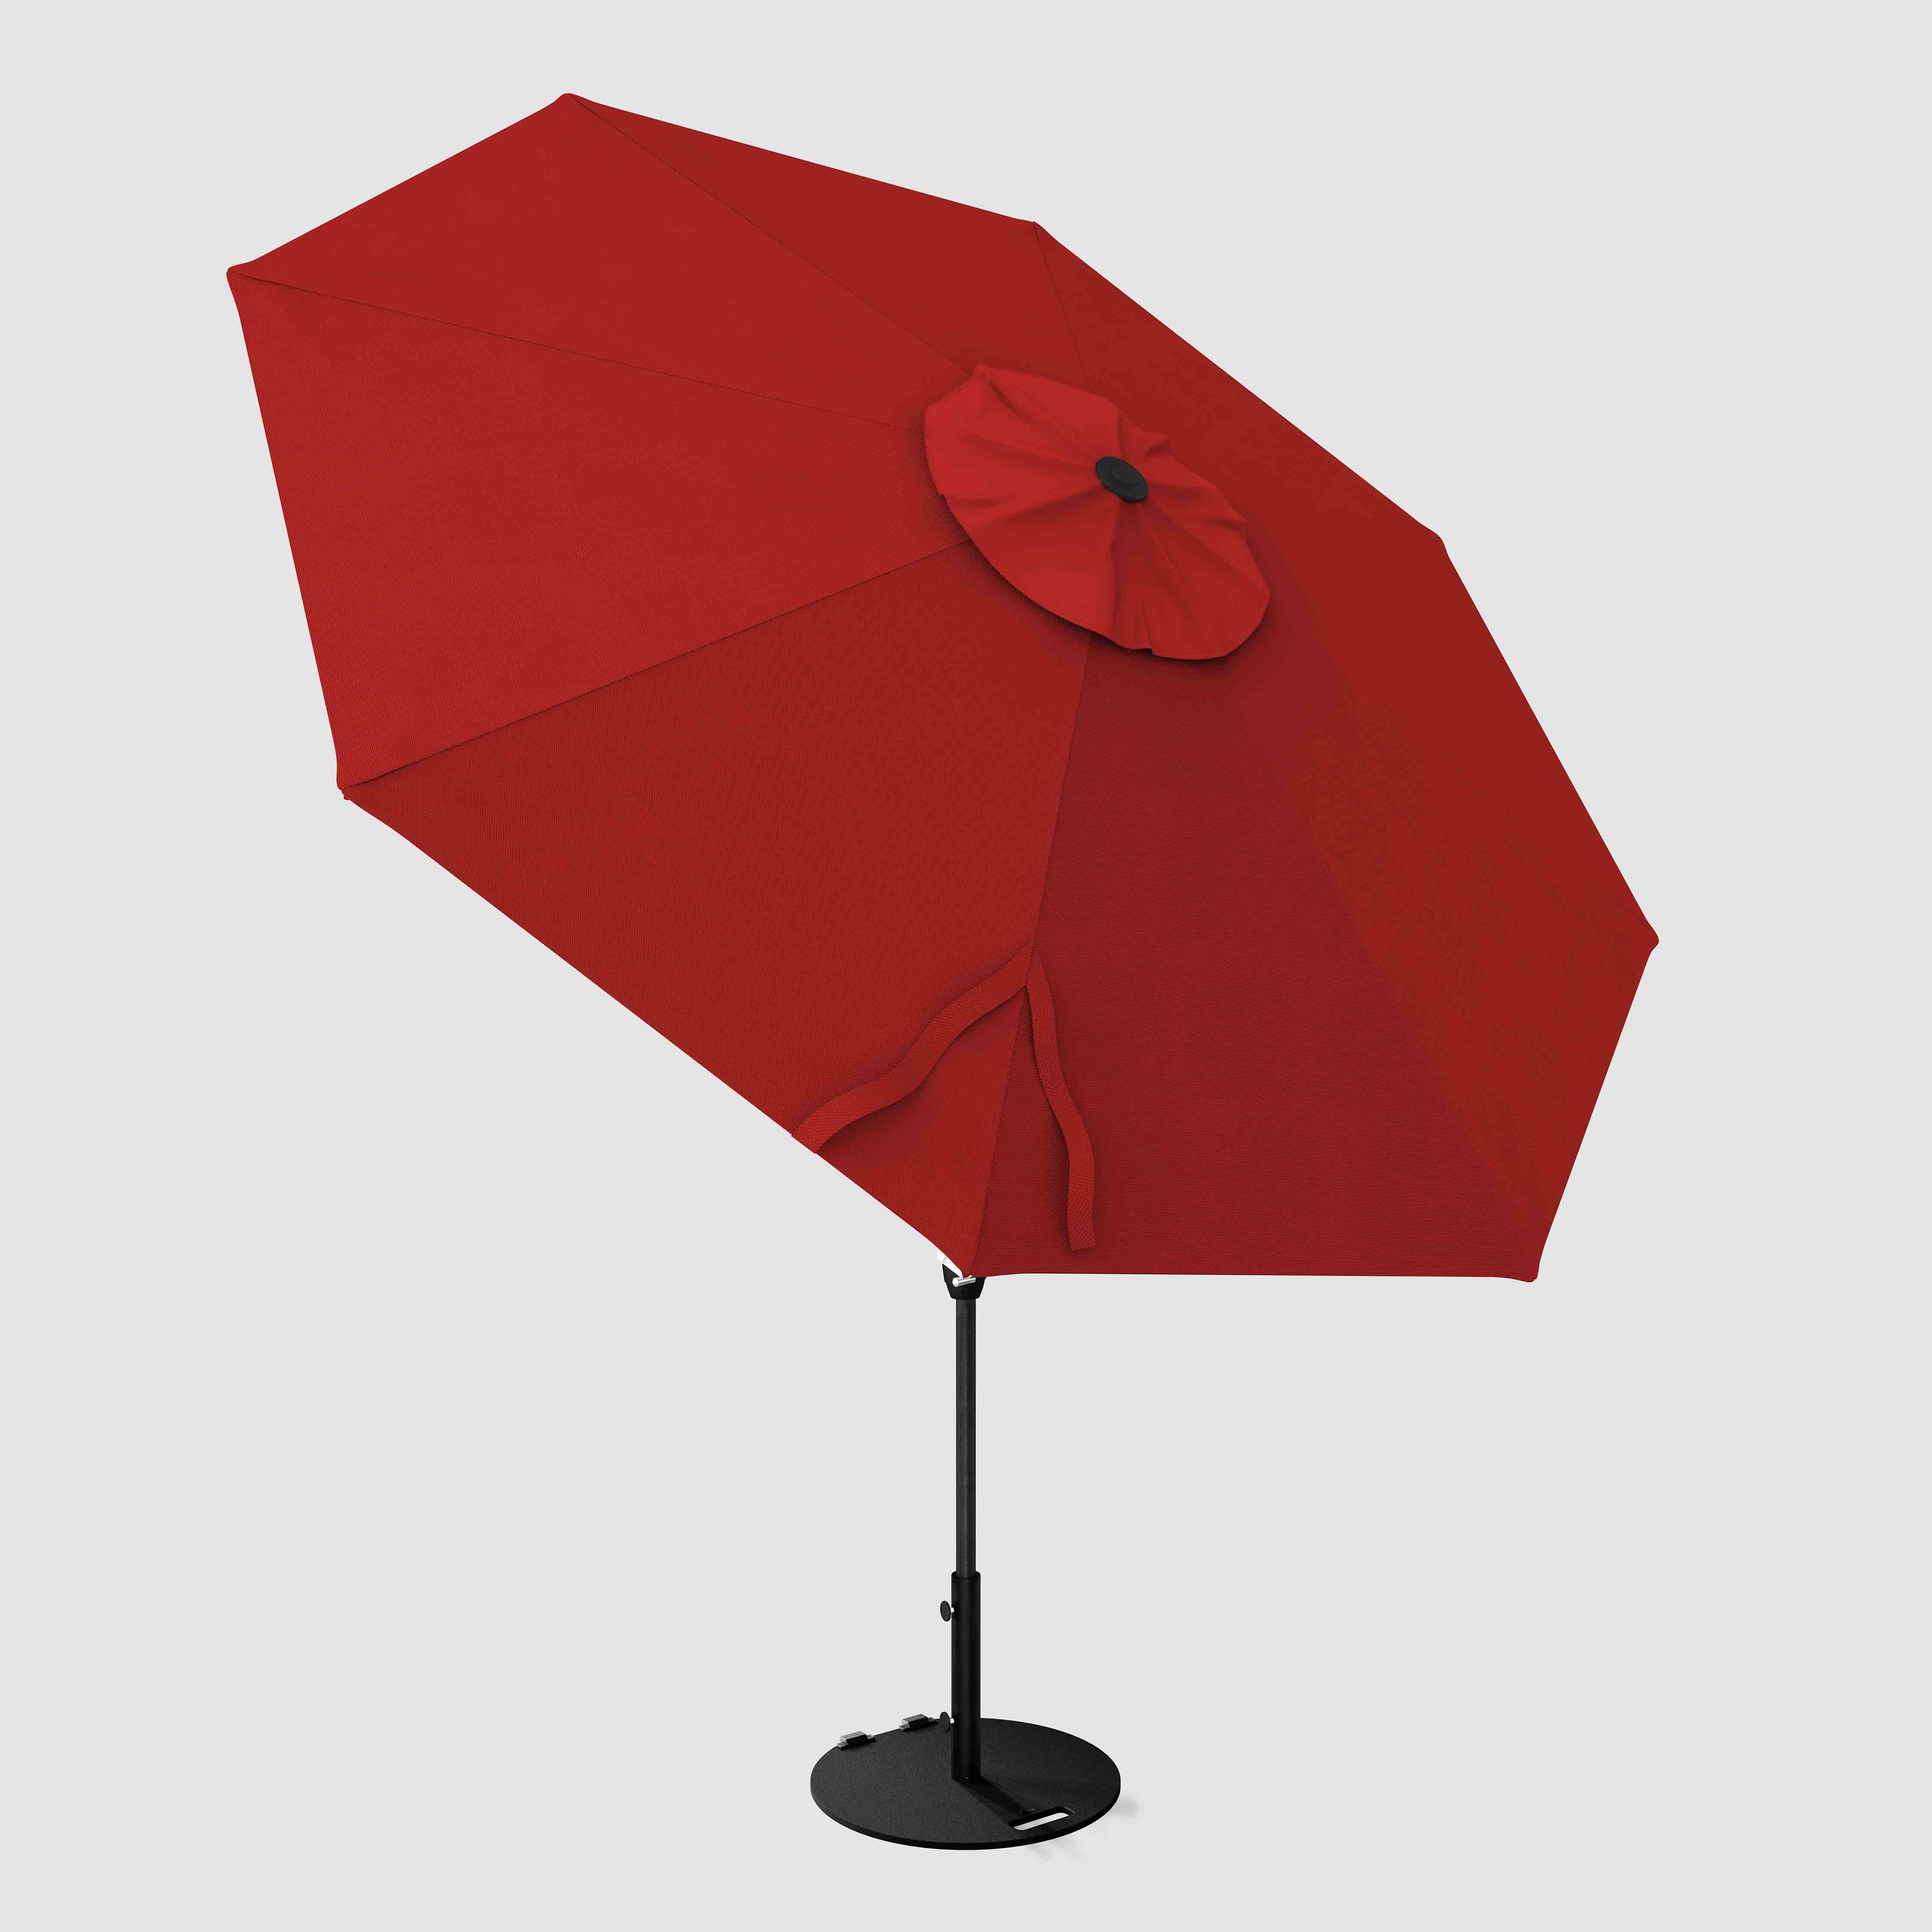 The Lean™ - Sunbrella Red